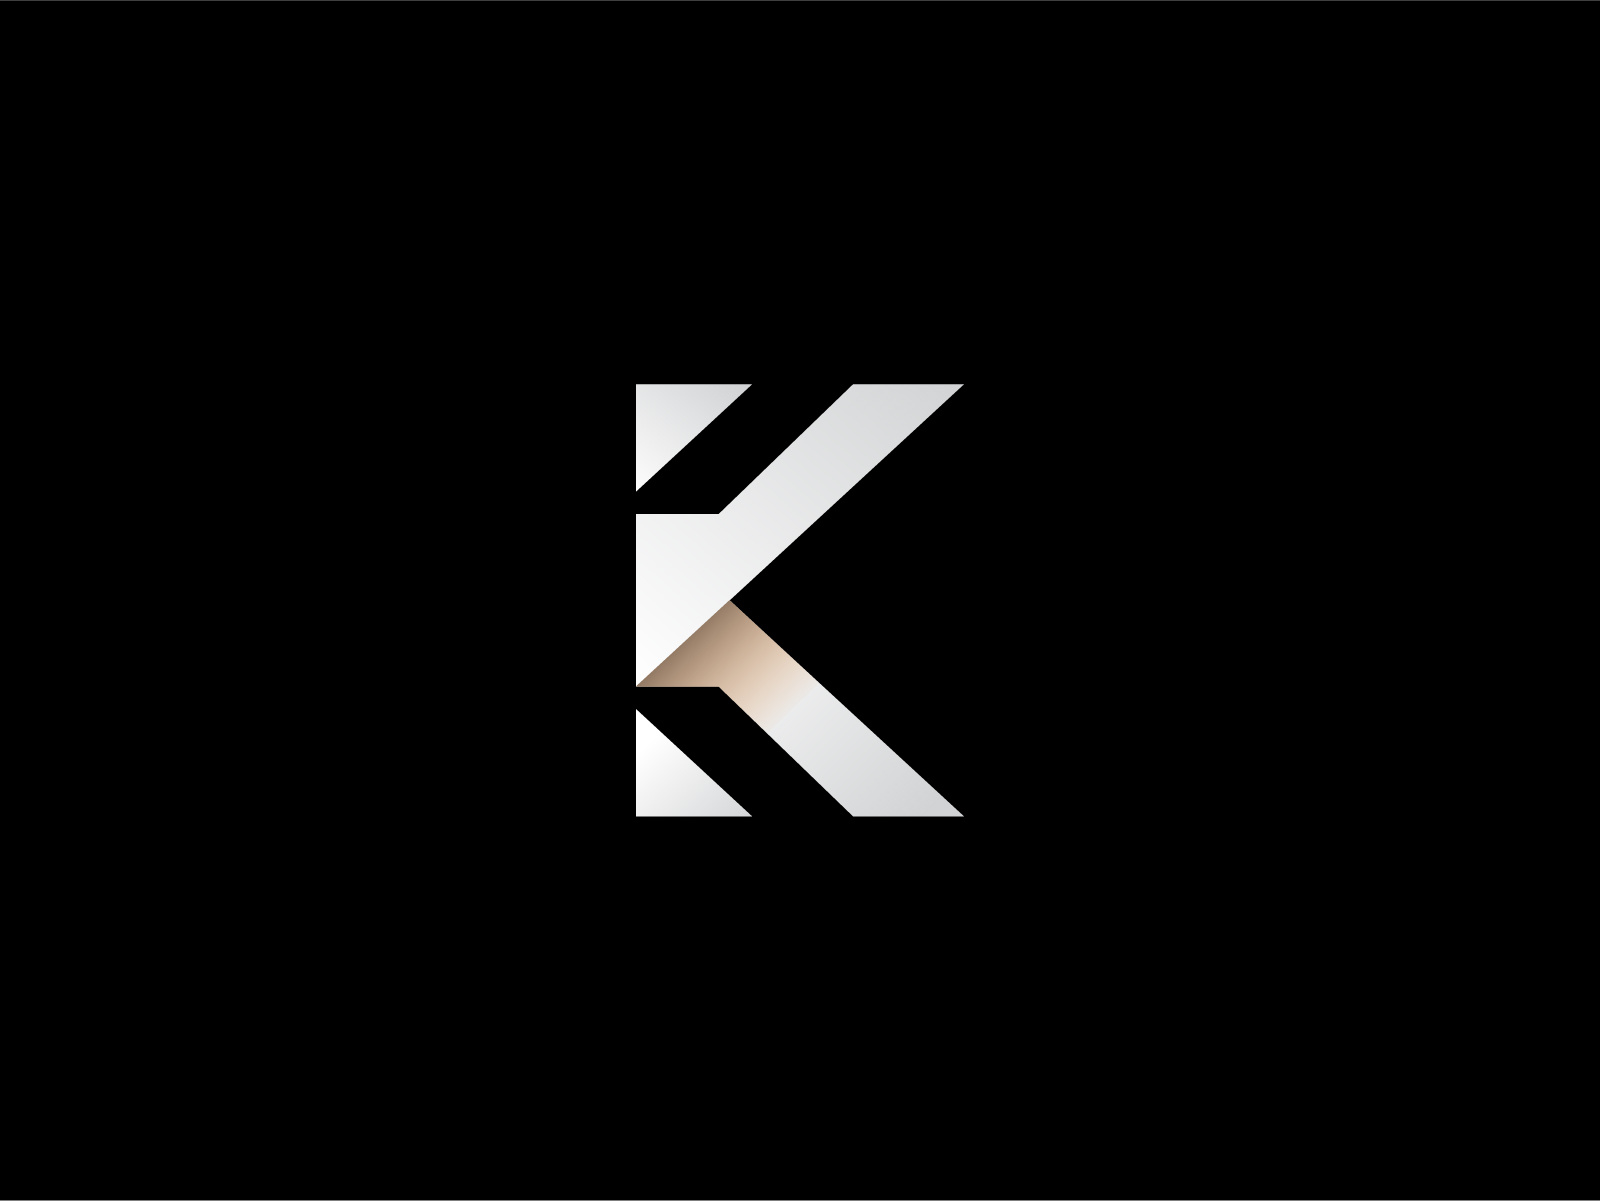 3D K Letter Logo & Branding Design by Biswajit bain on Dribbble